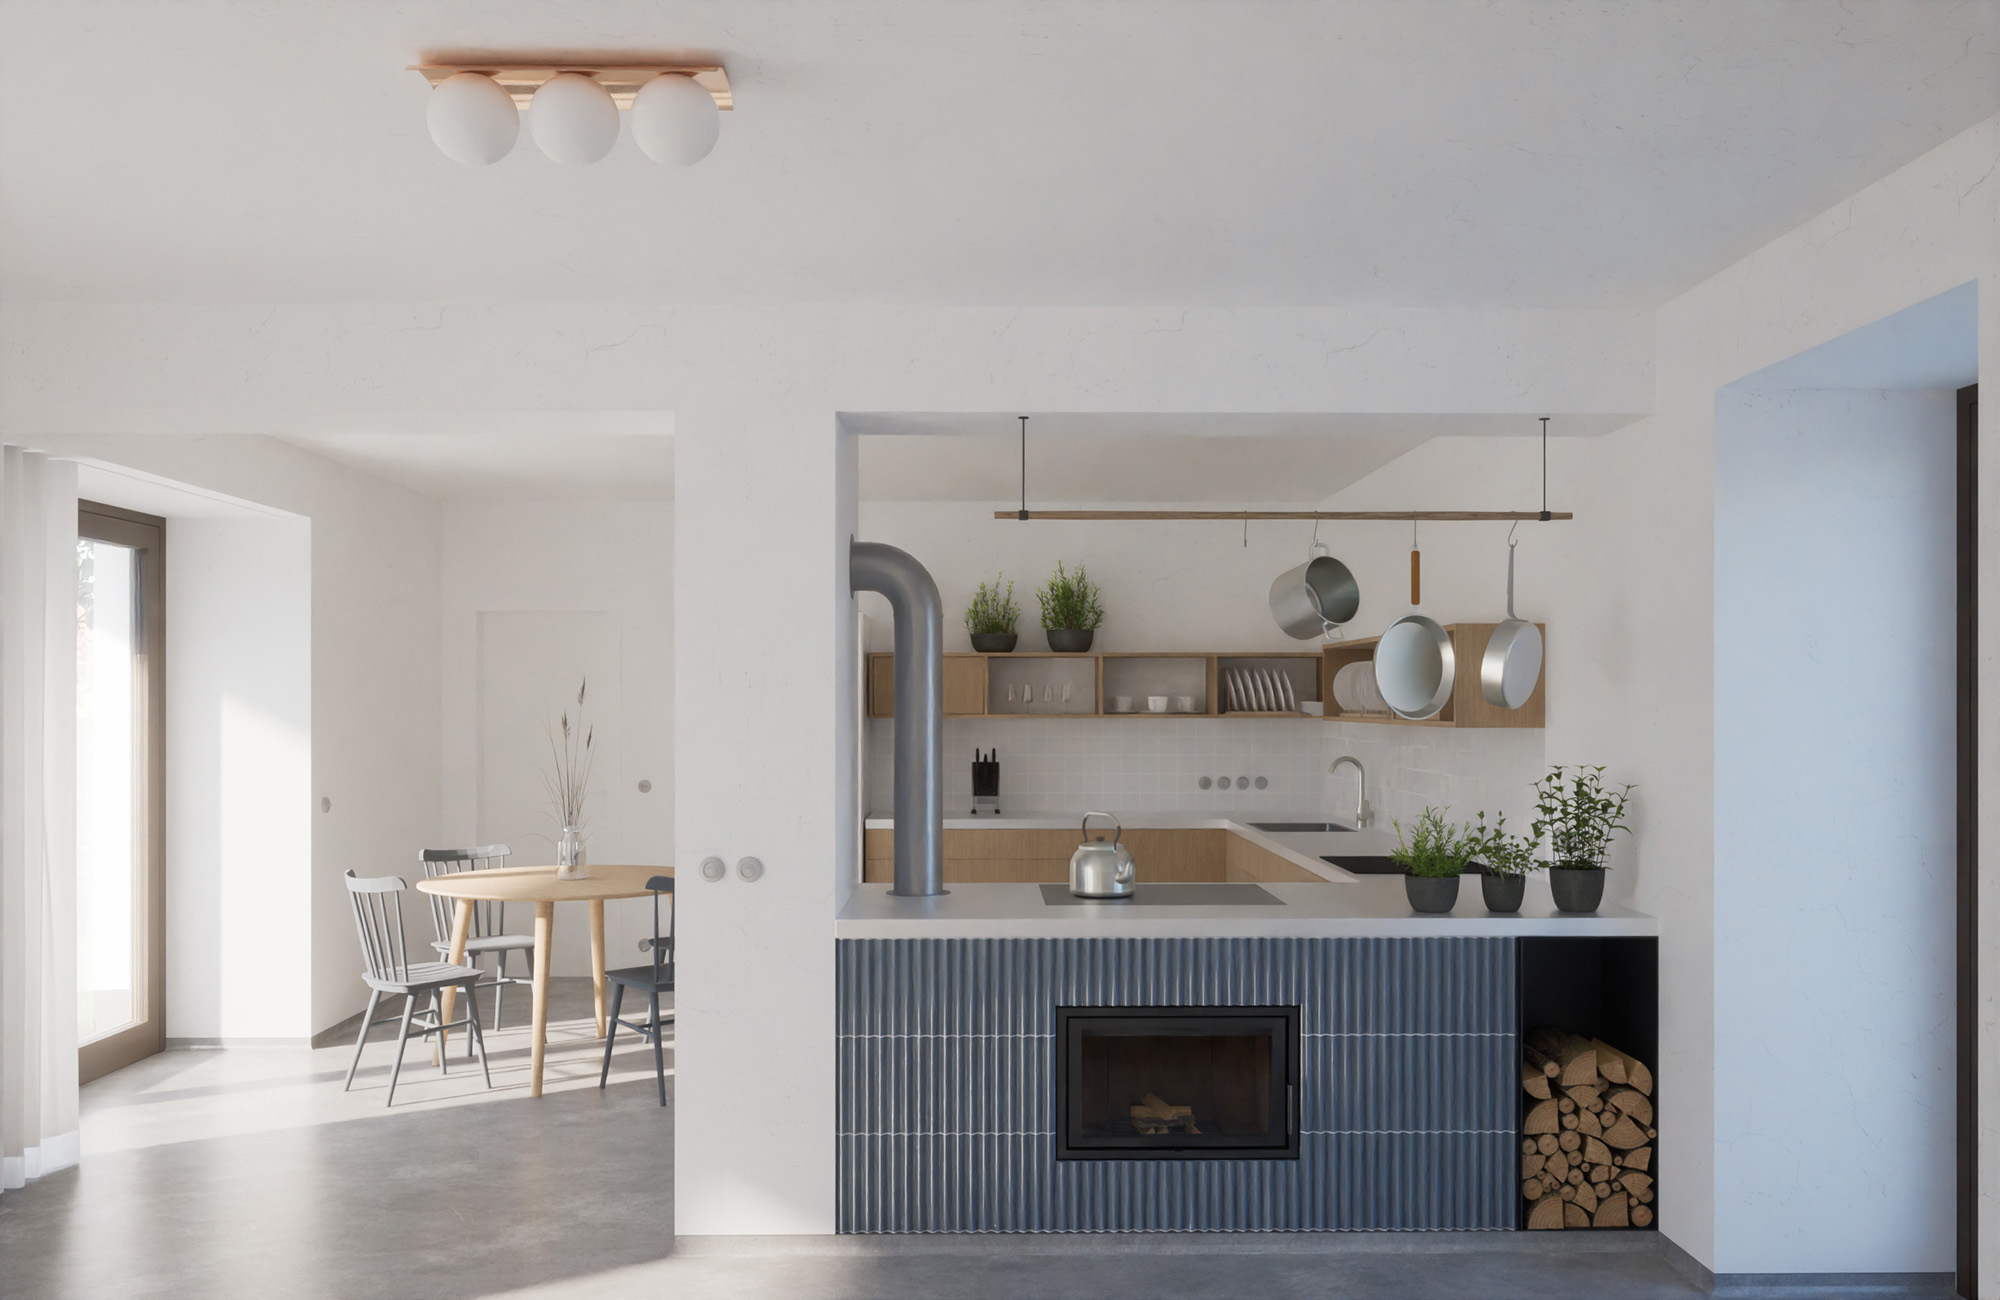 3D architektonická vizualizace rekonstrukce interiéru chalupy v Božeticích - kuchyň a jídelna